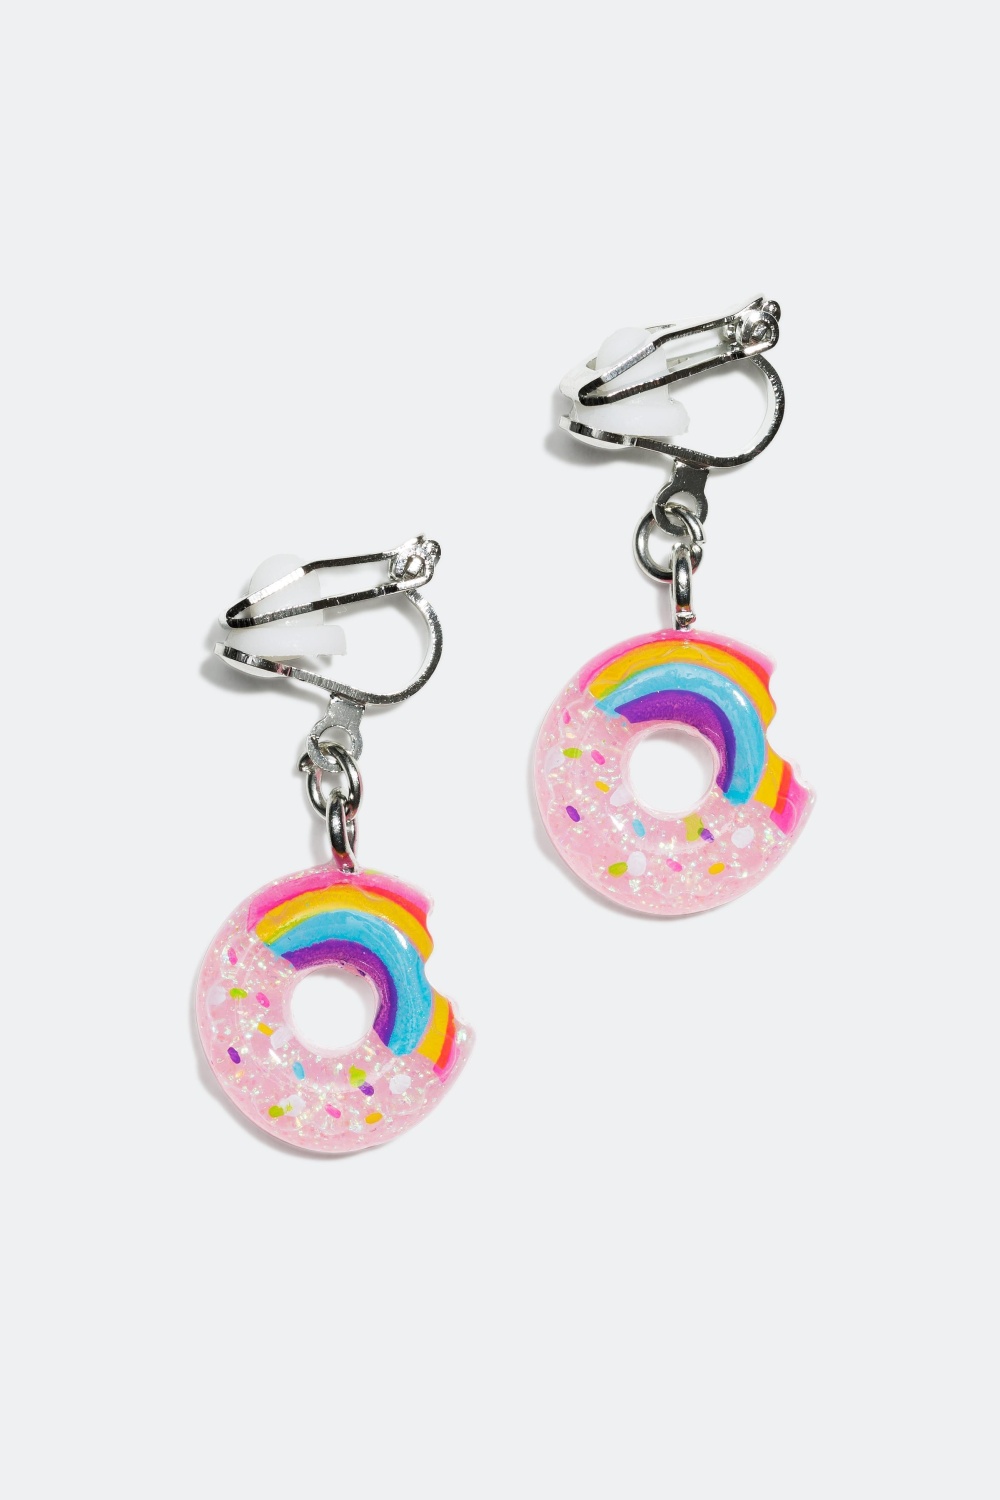 Clipsøreringe, donut med regnbue i gruppen Børn / Børnesmykker hos Glitter (322646)